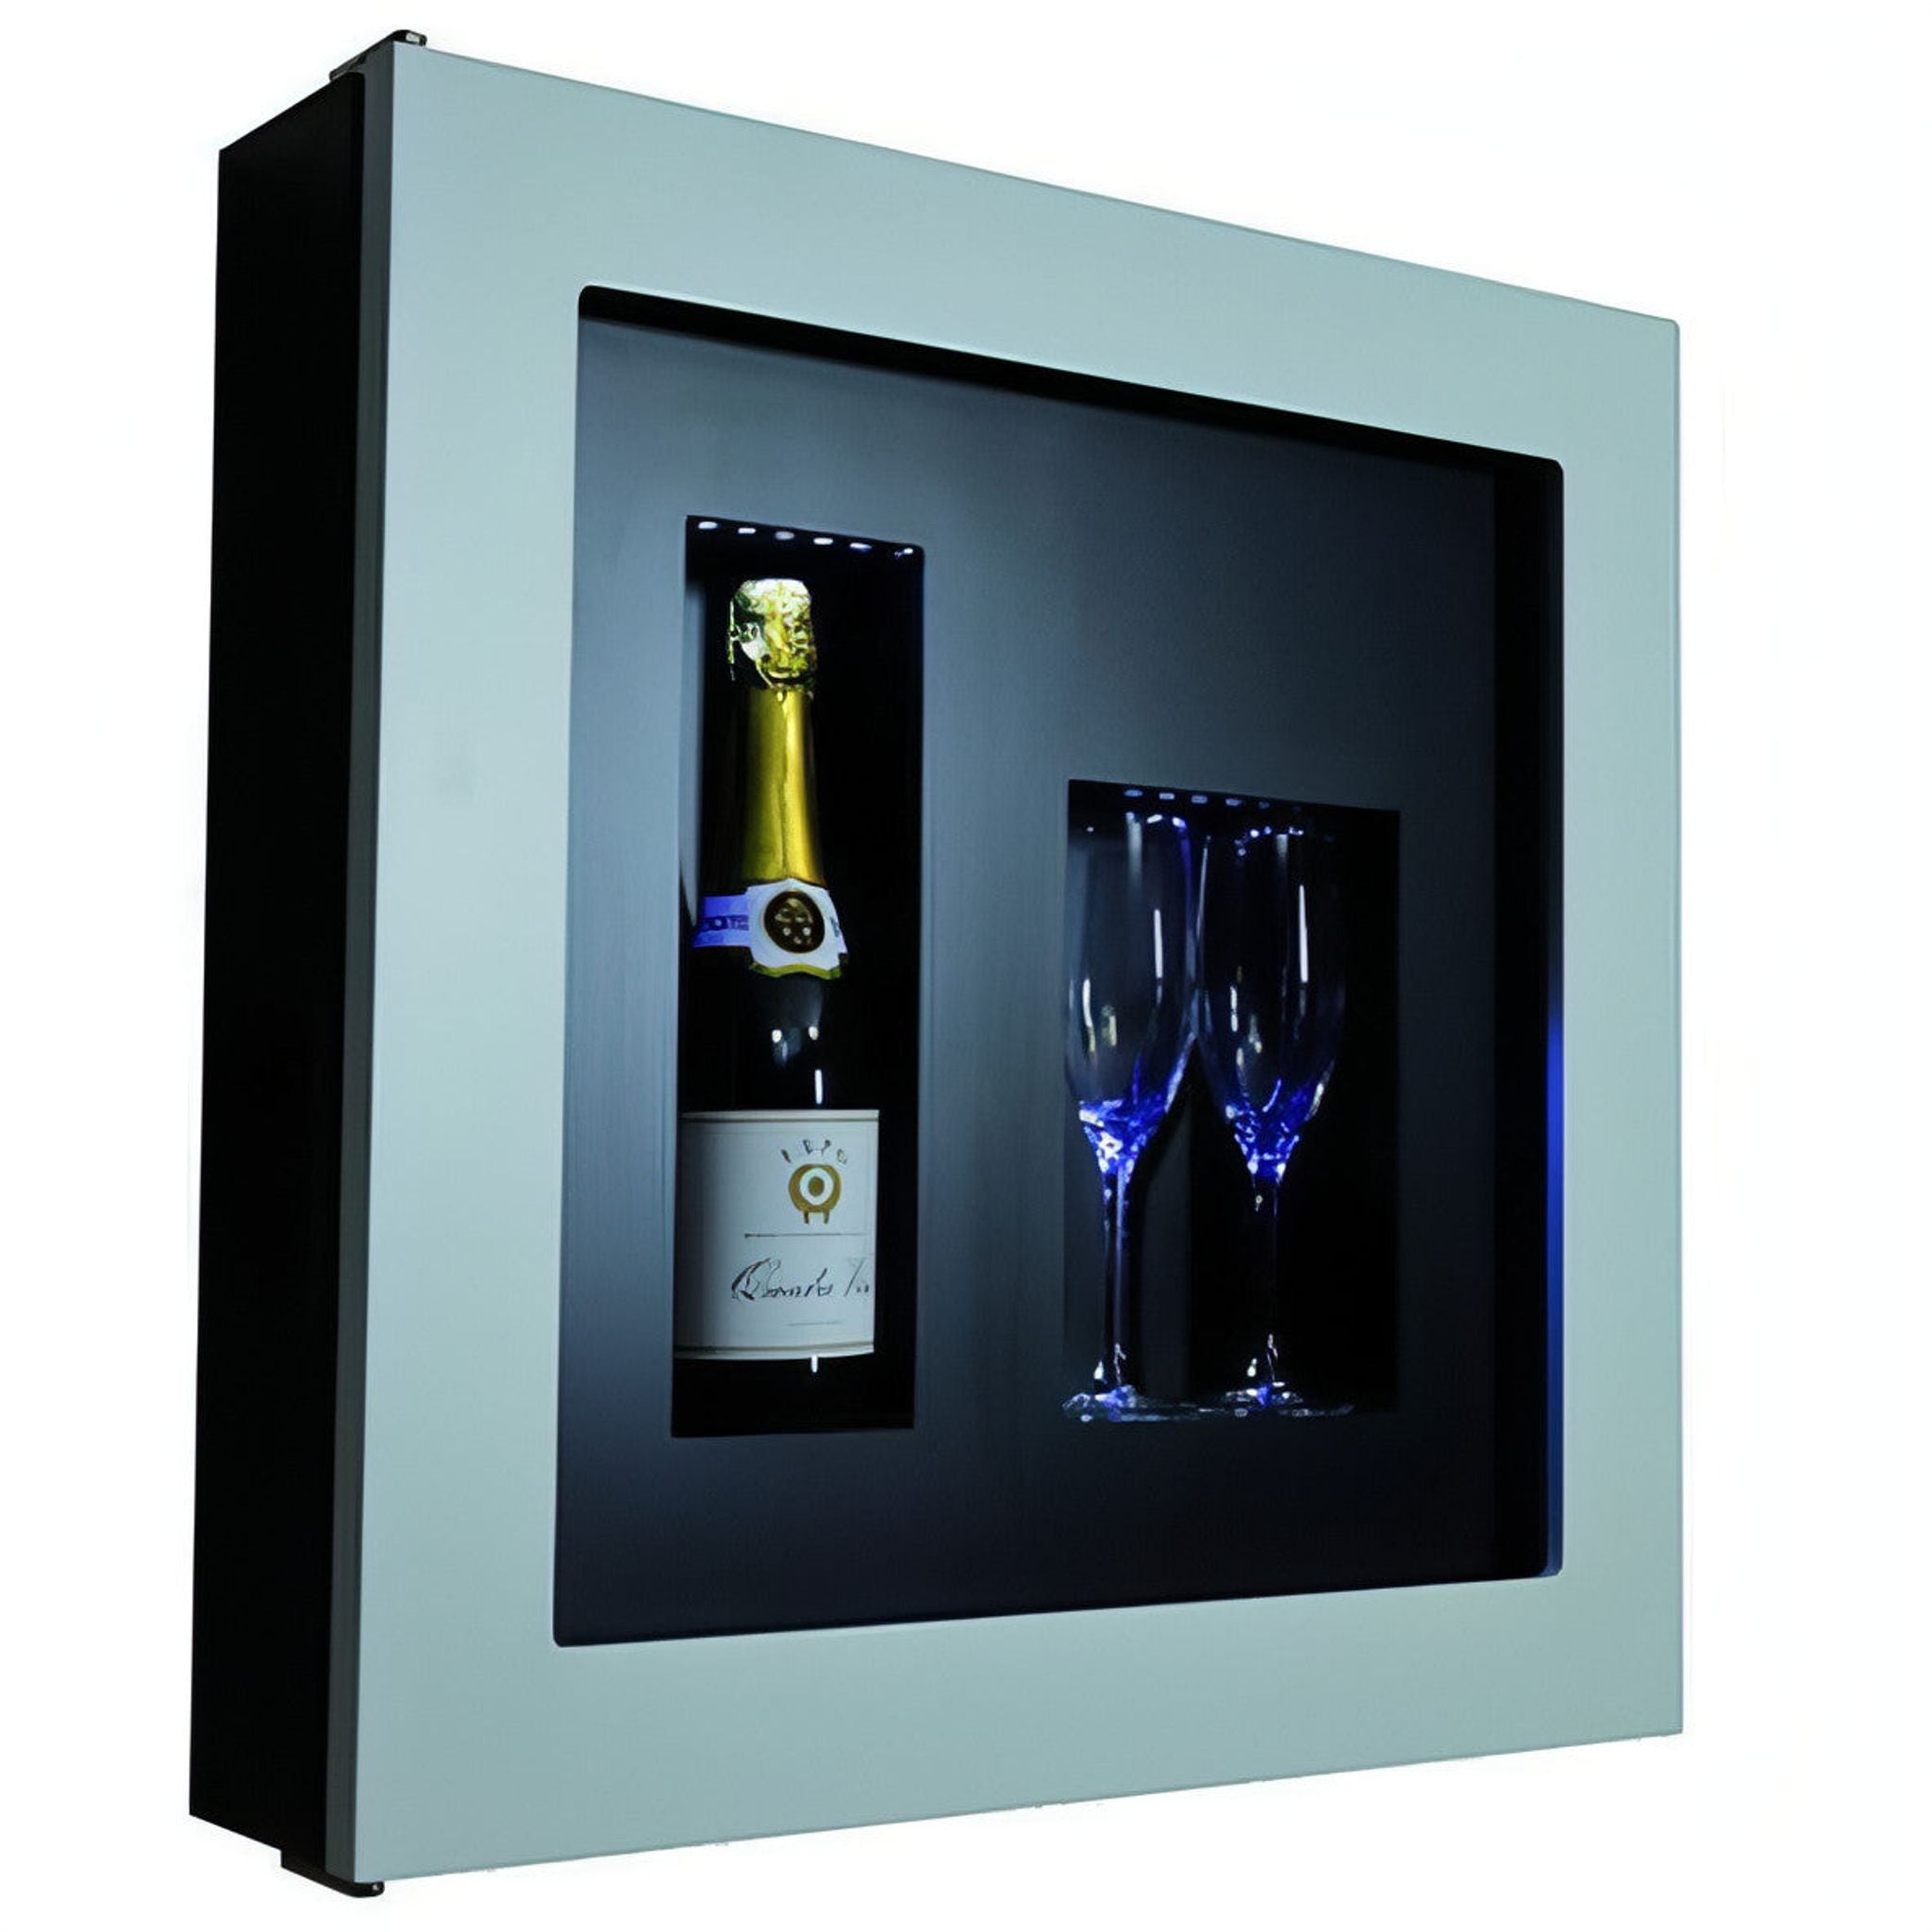 Quadro Vino - Wine Wall QV12 - 1 Bottle Display Unit